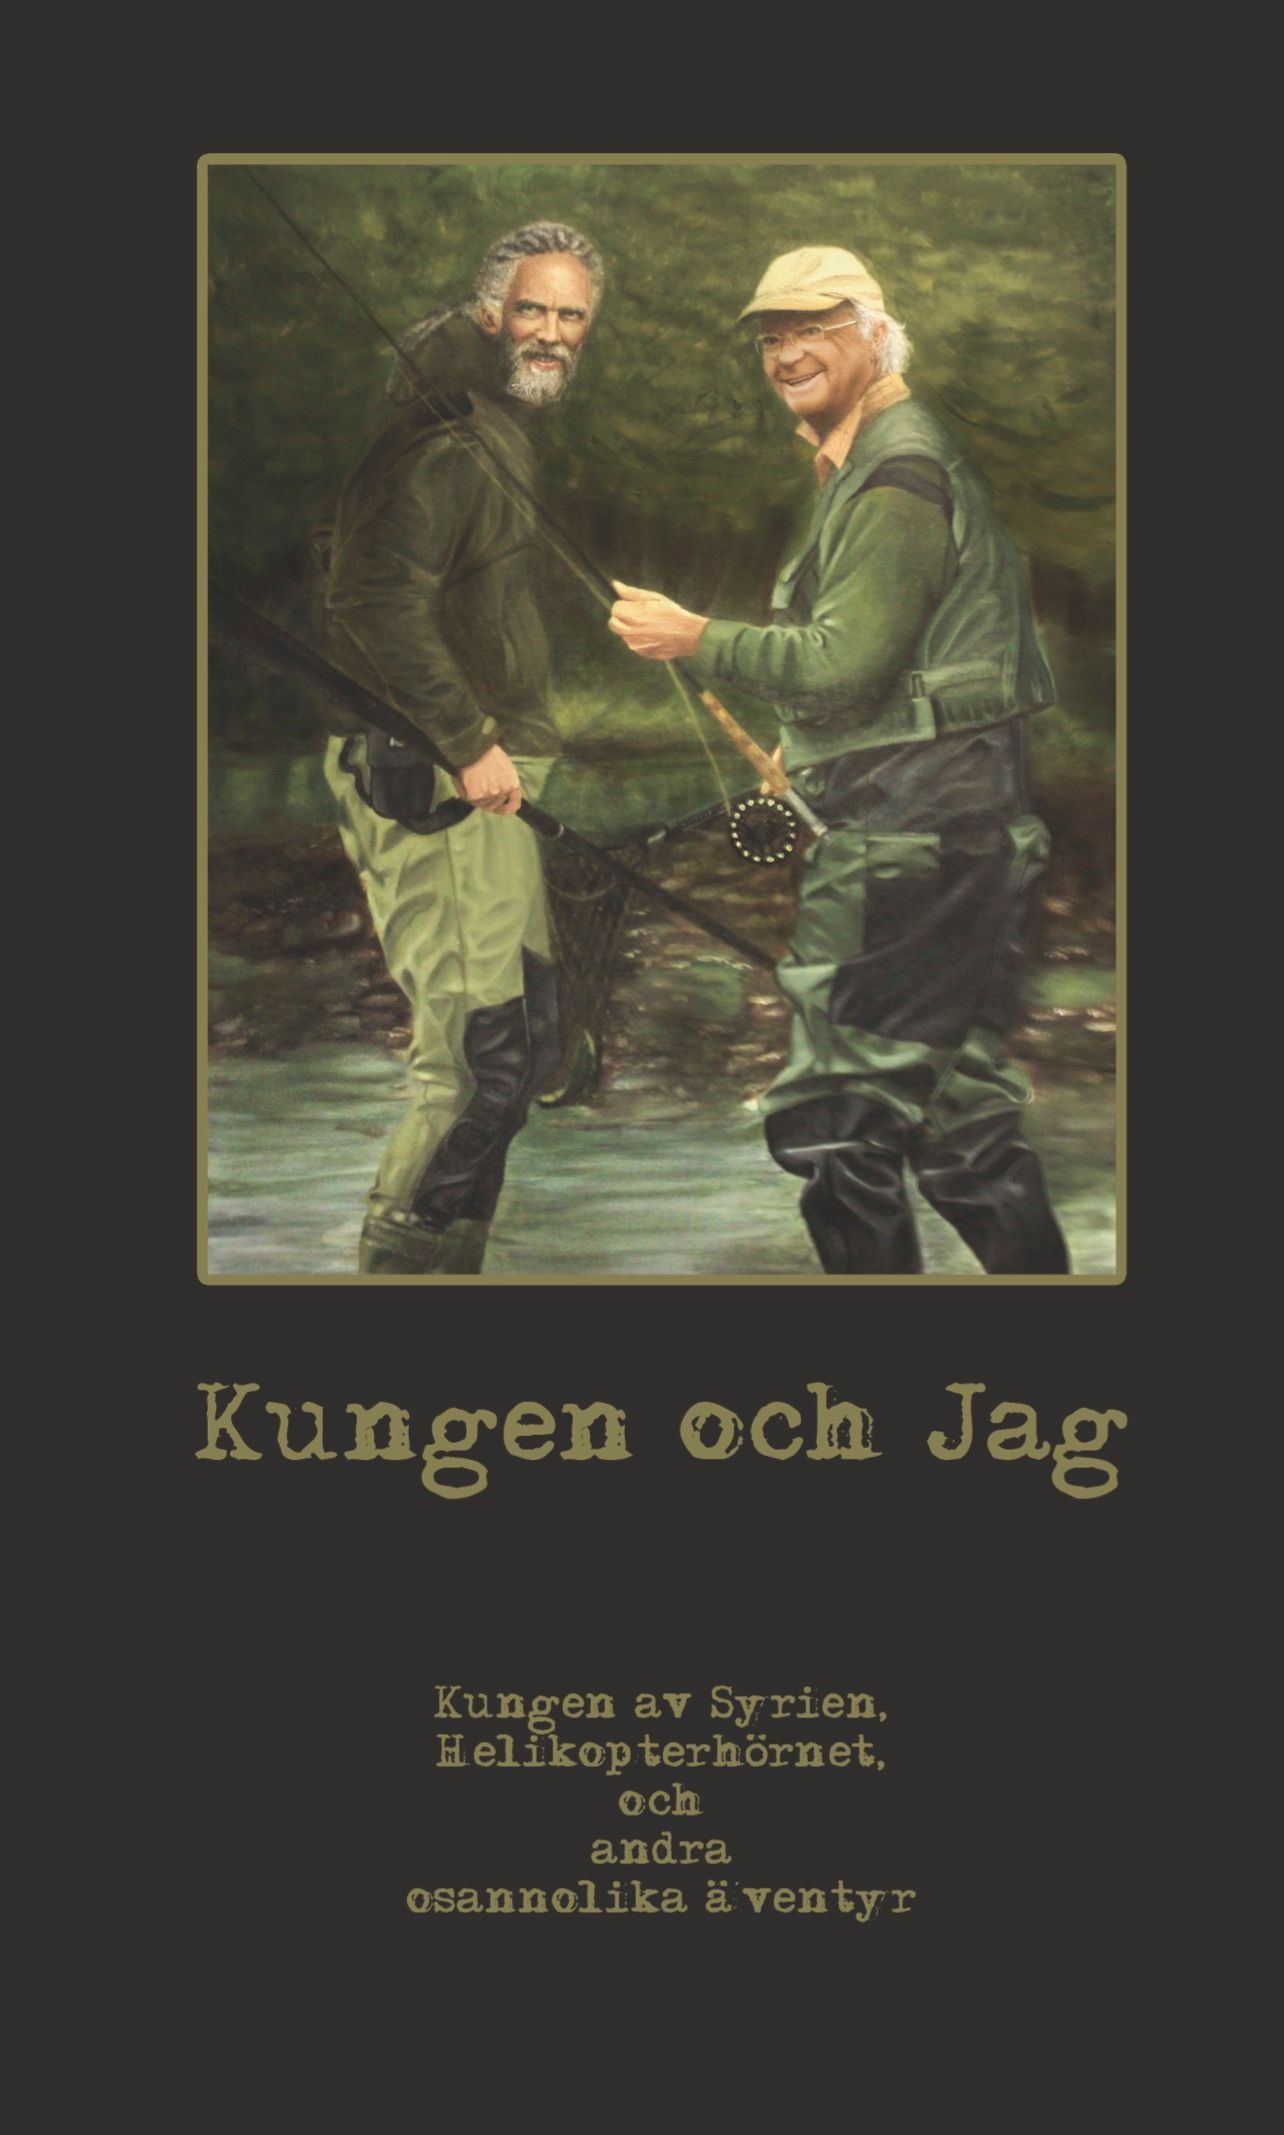 Kungen och Jag, e-bok av PapaFahr